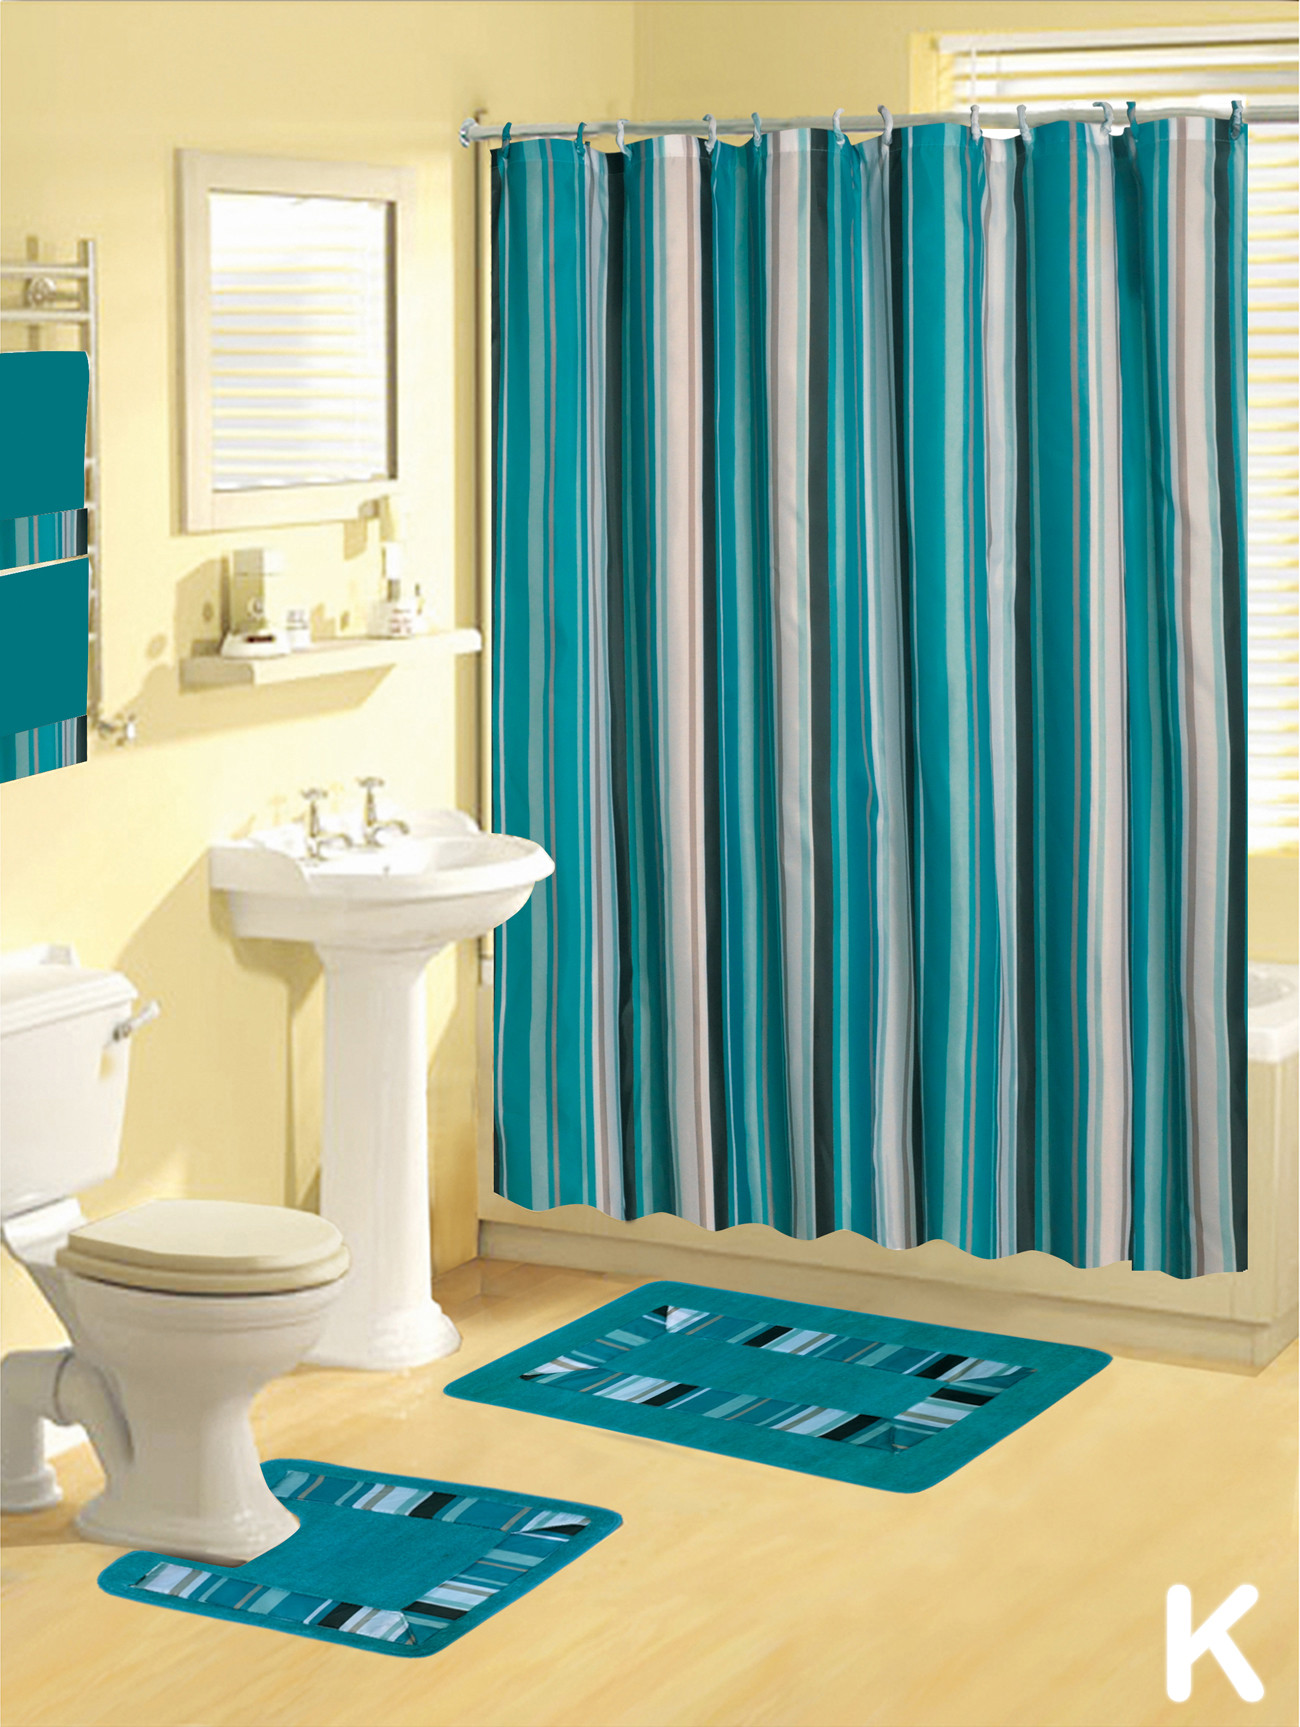 Bathroom Sets With Shower Curtain
 Shower Curtains 17 pcs Set Contemporary Bath Mat Contour